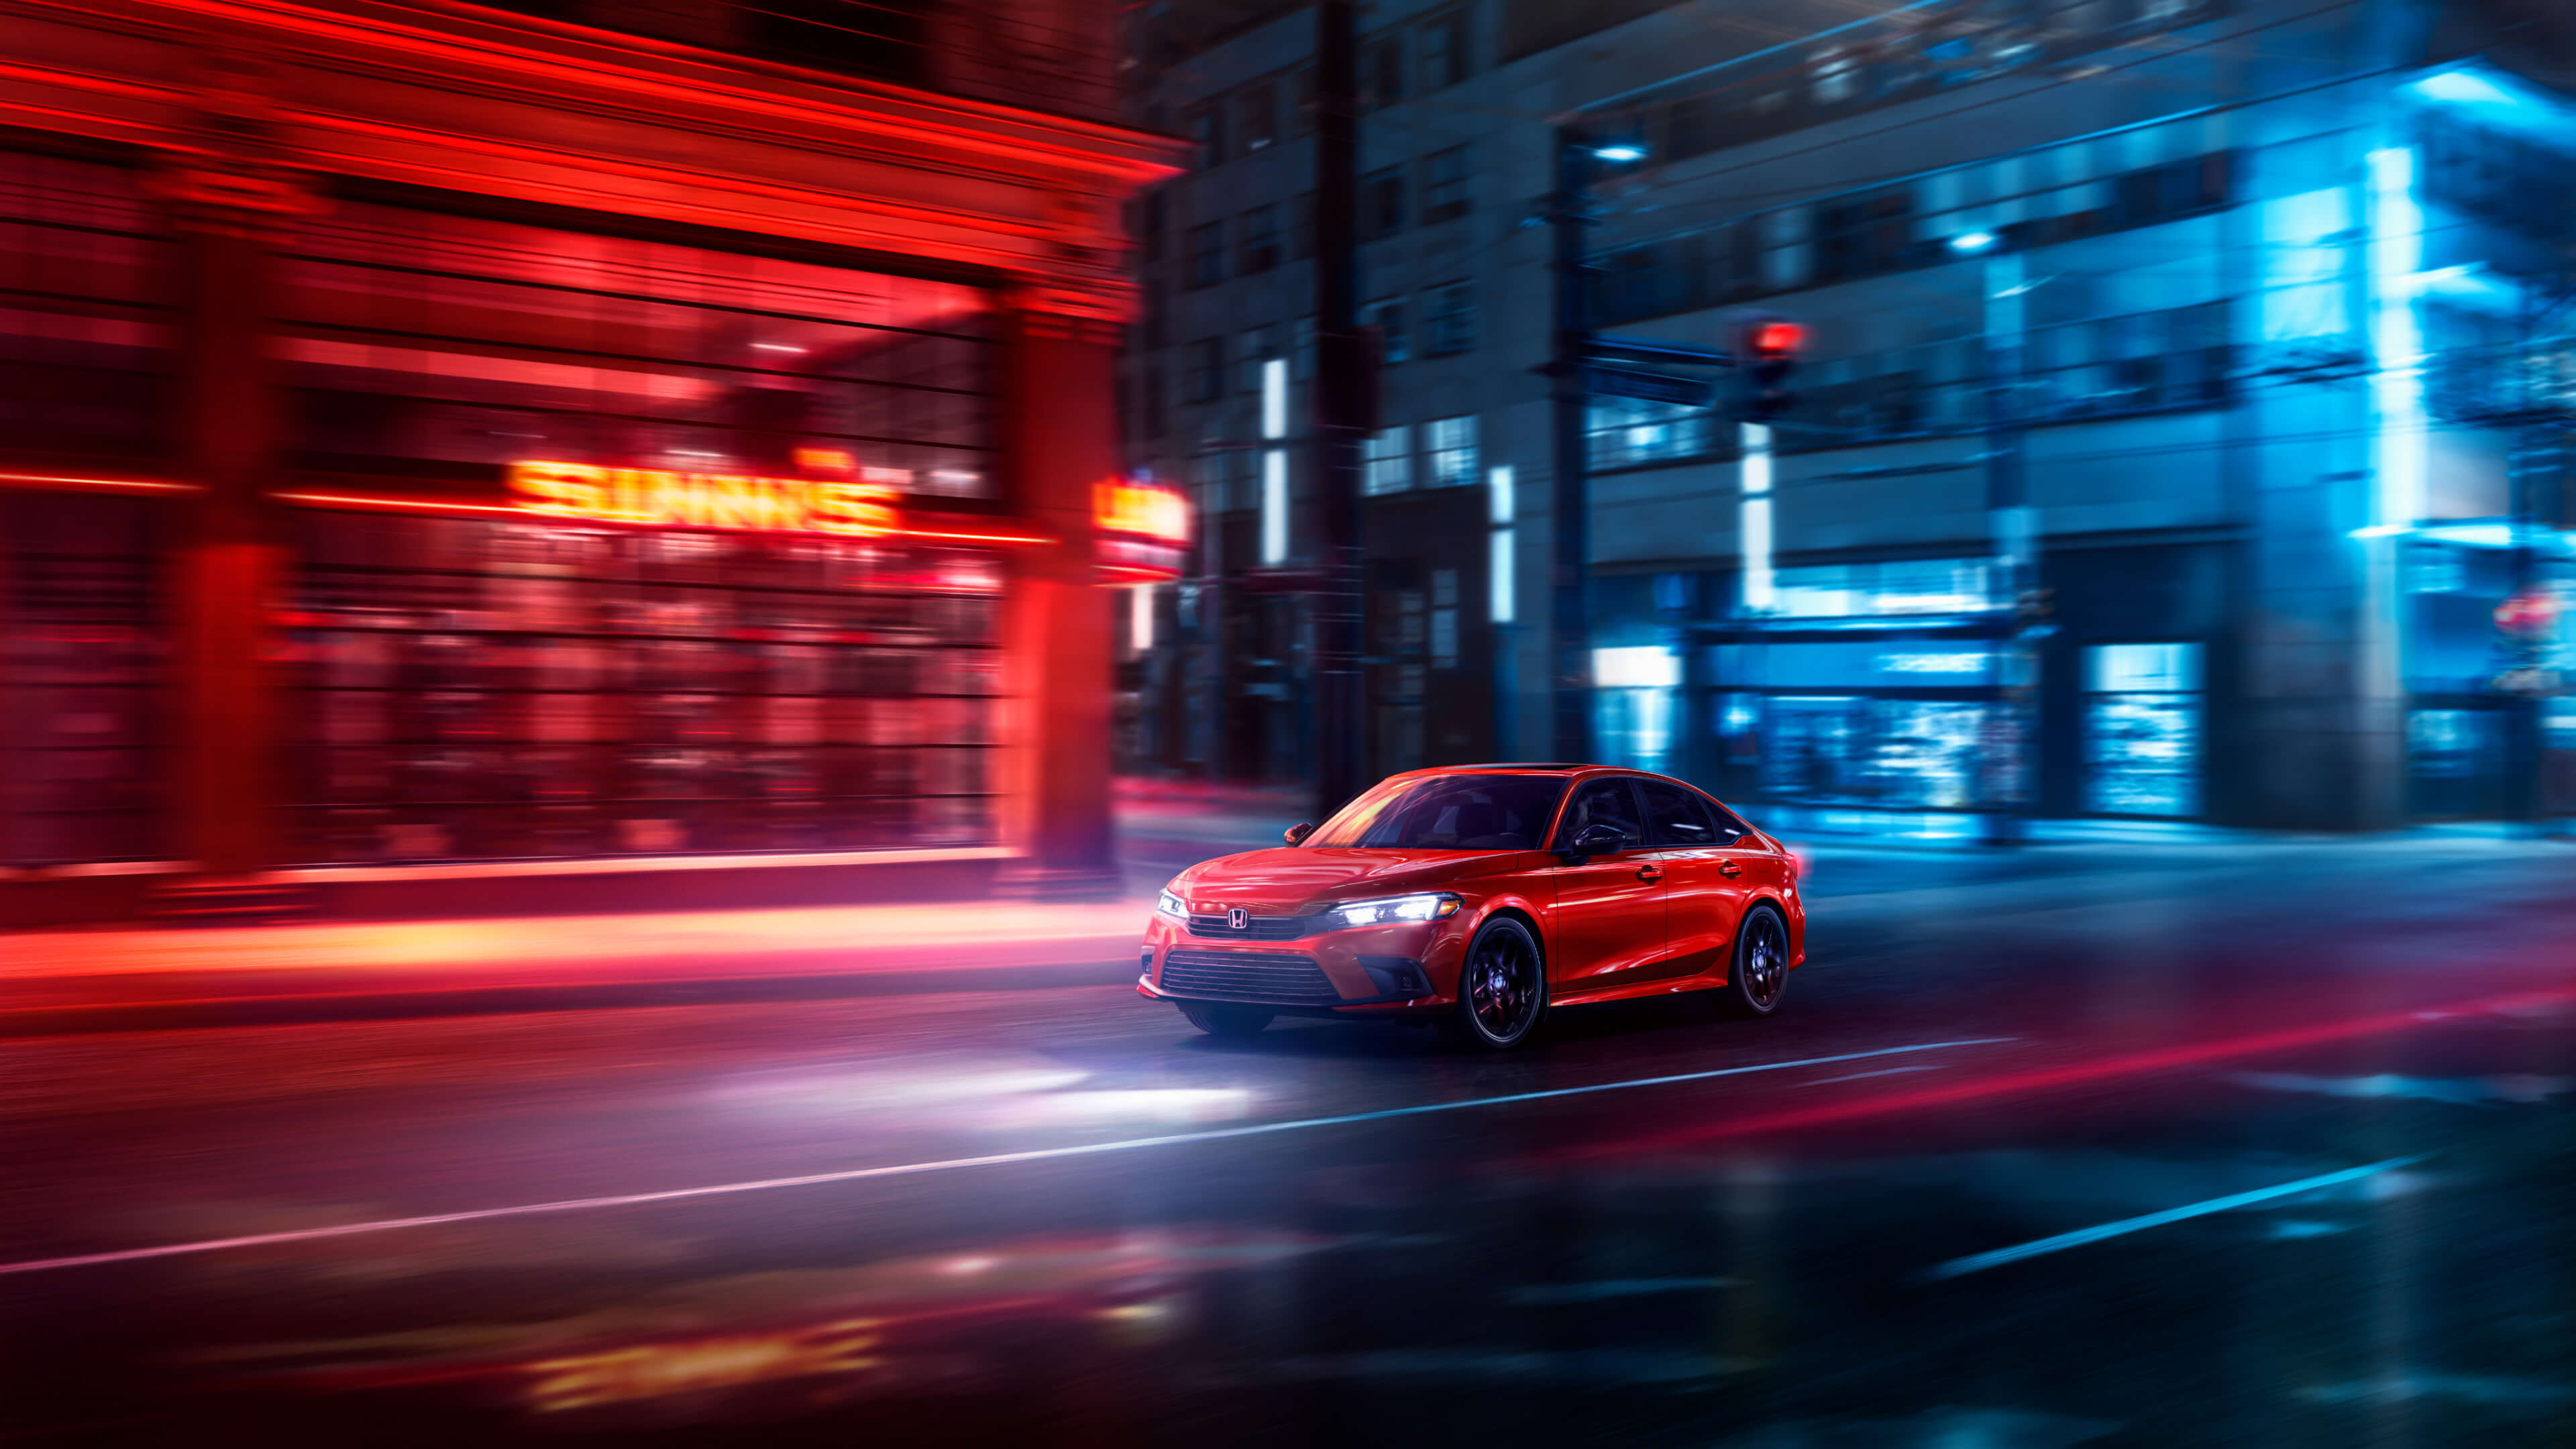 Vue latérale avant d’une Honda Civic 2022 rouge traversant la ville de nuit. L’image est floue, pour rendre l’impression de mouvement, et éclairée par des lumières rouges et bleues émises par les bâtiments de la rue.